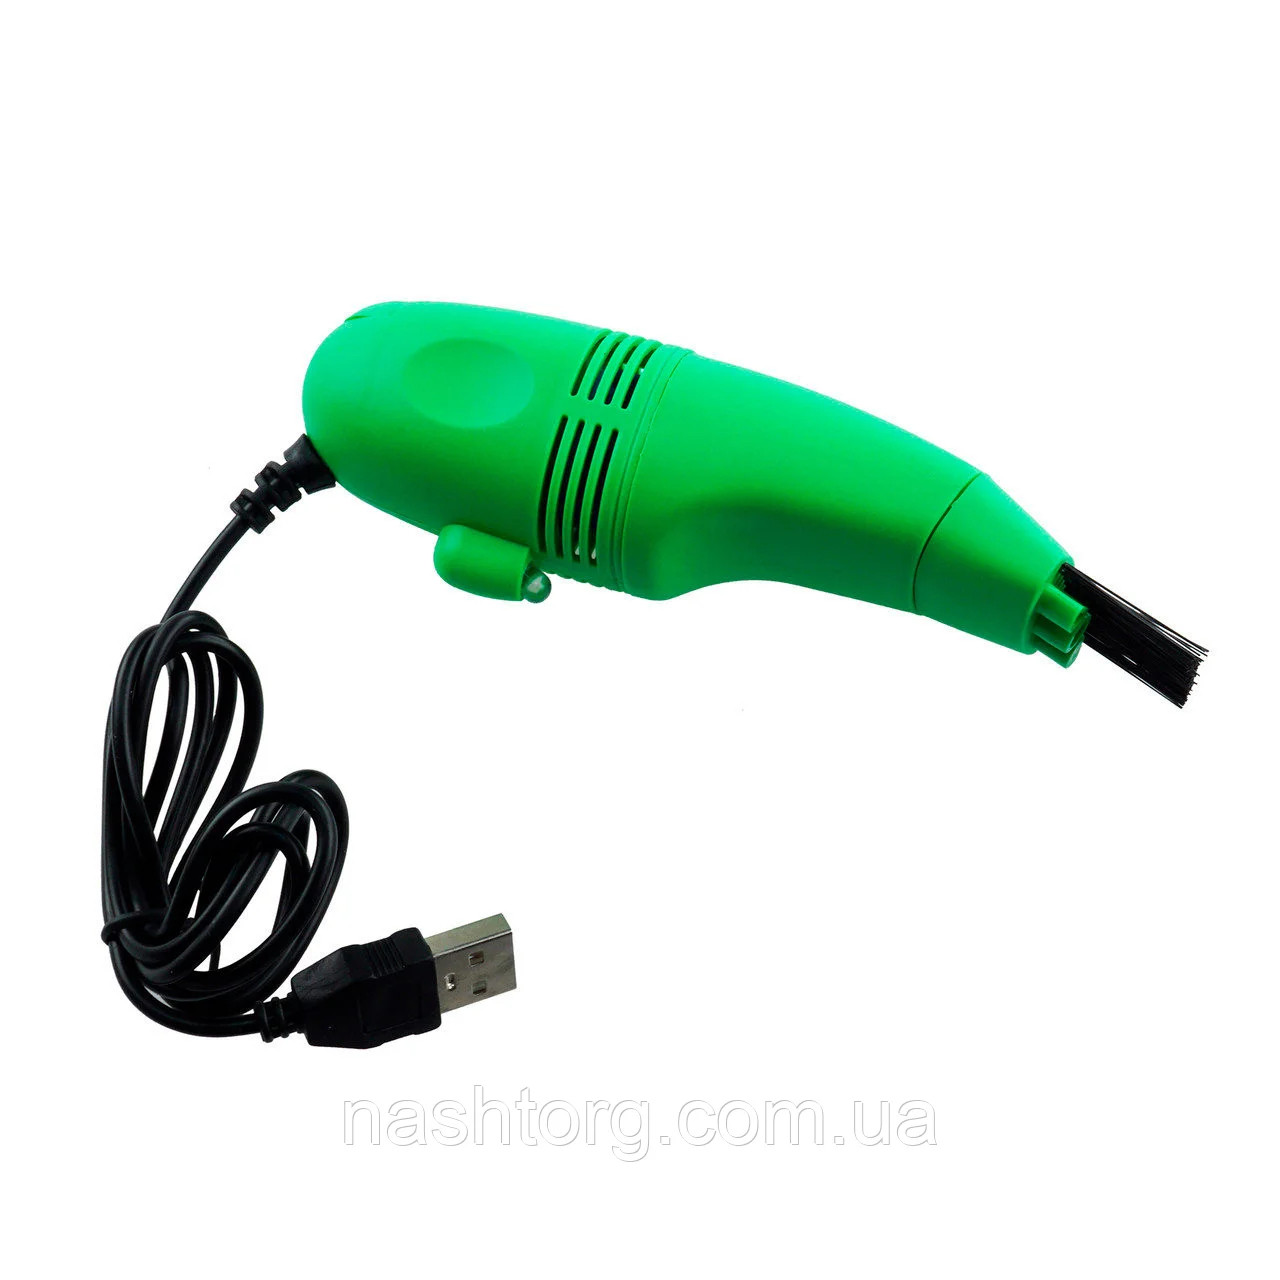 Мини USB пылесос для клавиатуры, цвет зеленый - Оплата Kaspi Pay